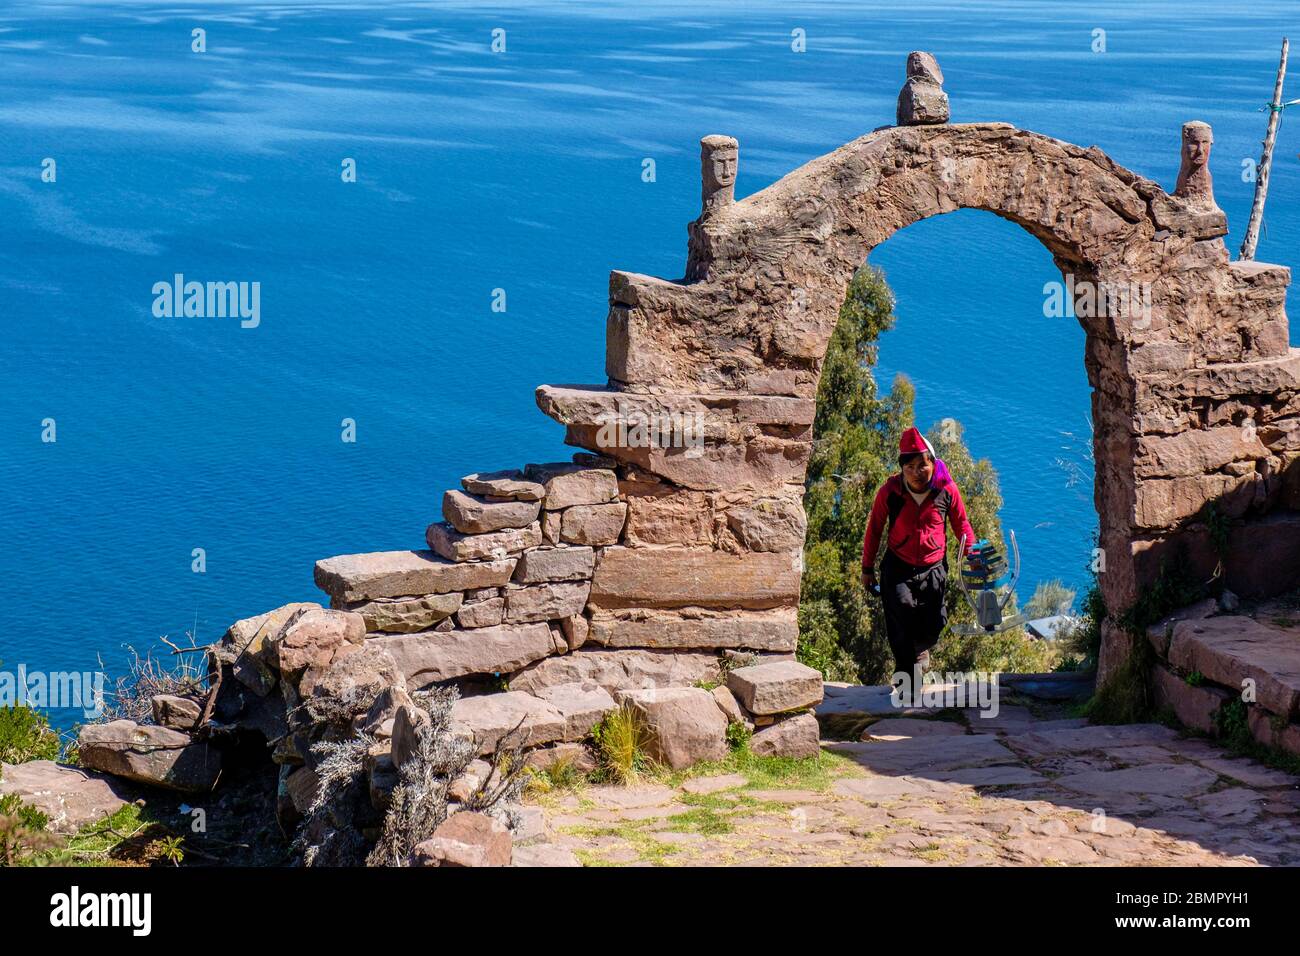 Homme péruvien local traversant une arche de pierre typique d'Isla Taquile avec le lac Titicaca en arrière-plan, île Taquile, Pérou Banque D'Images